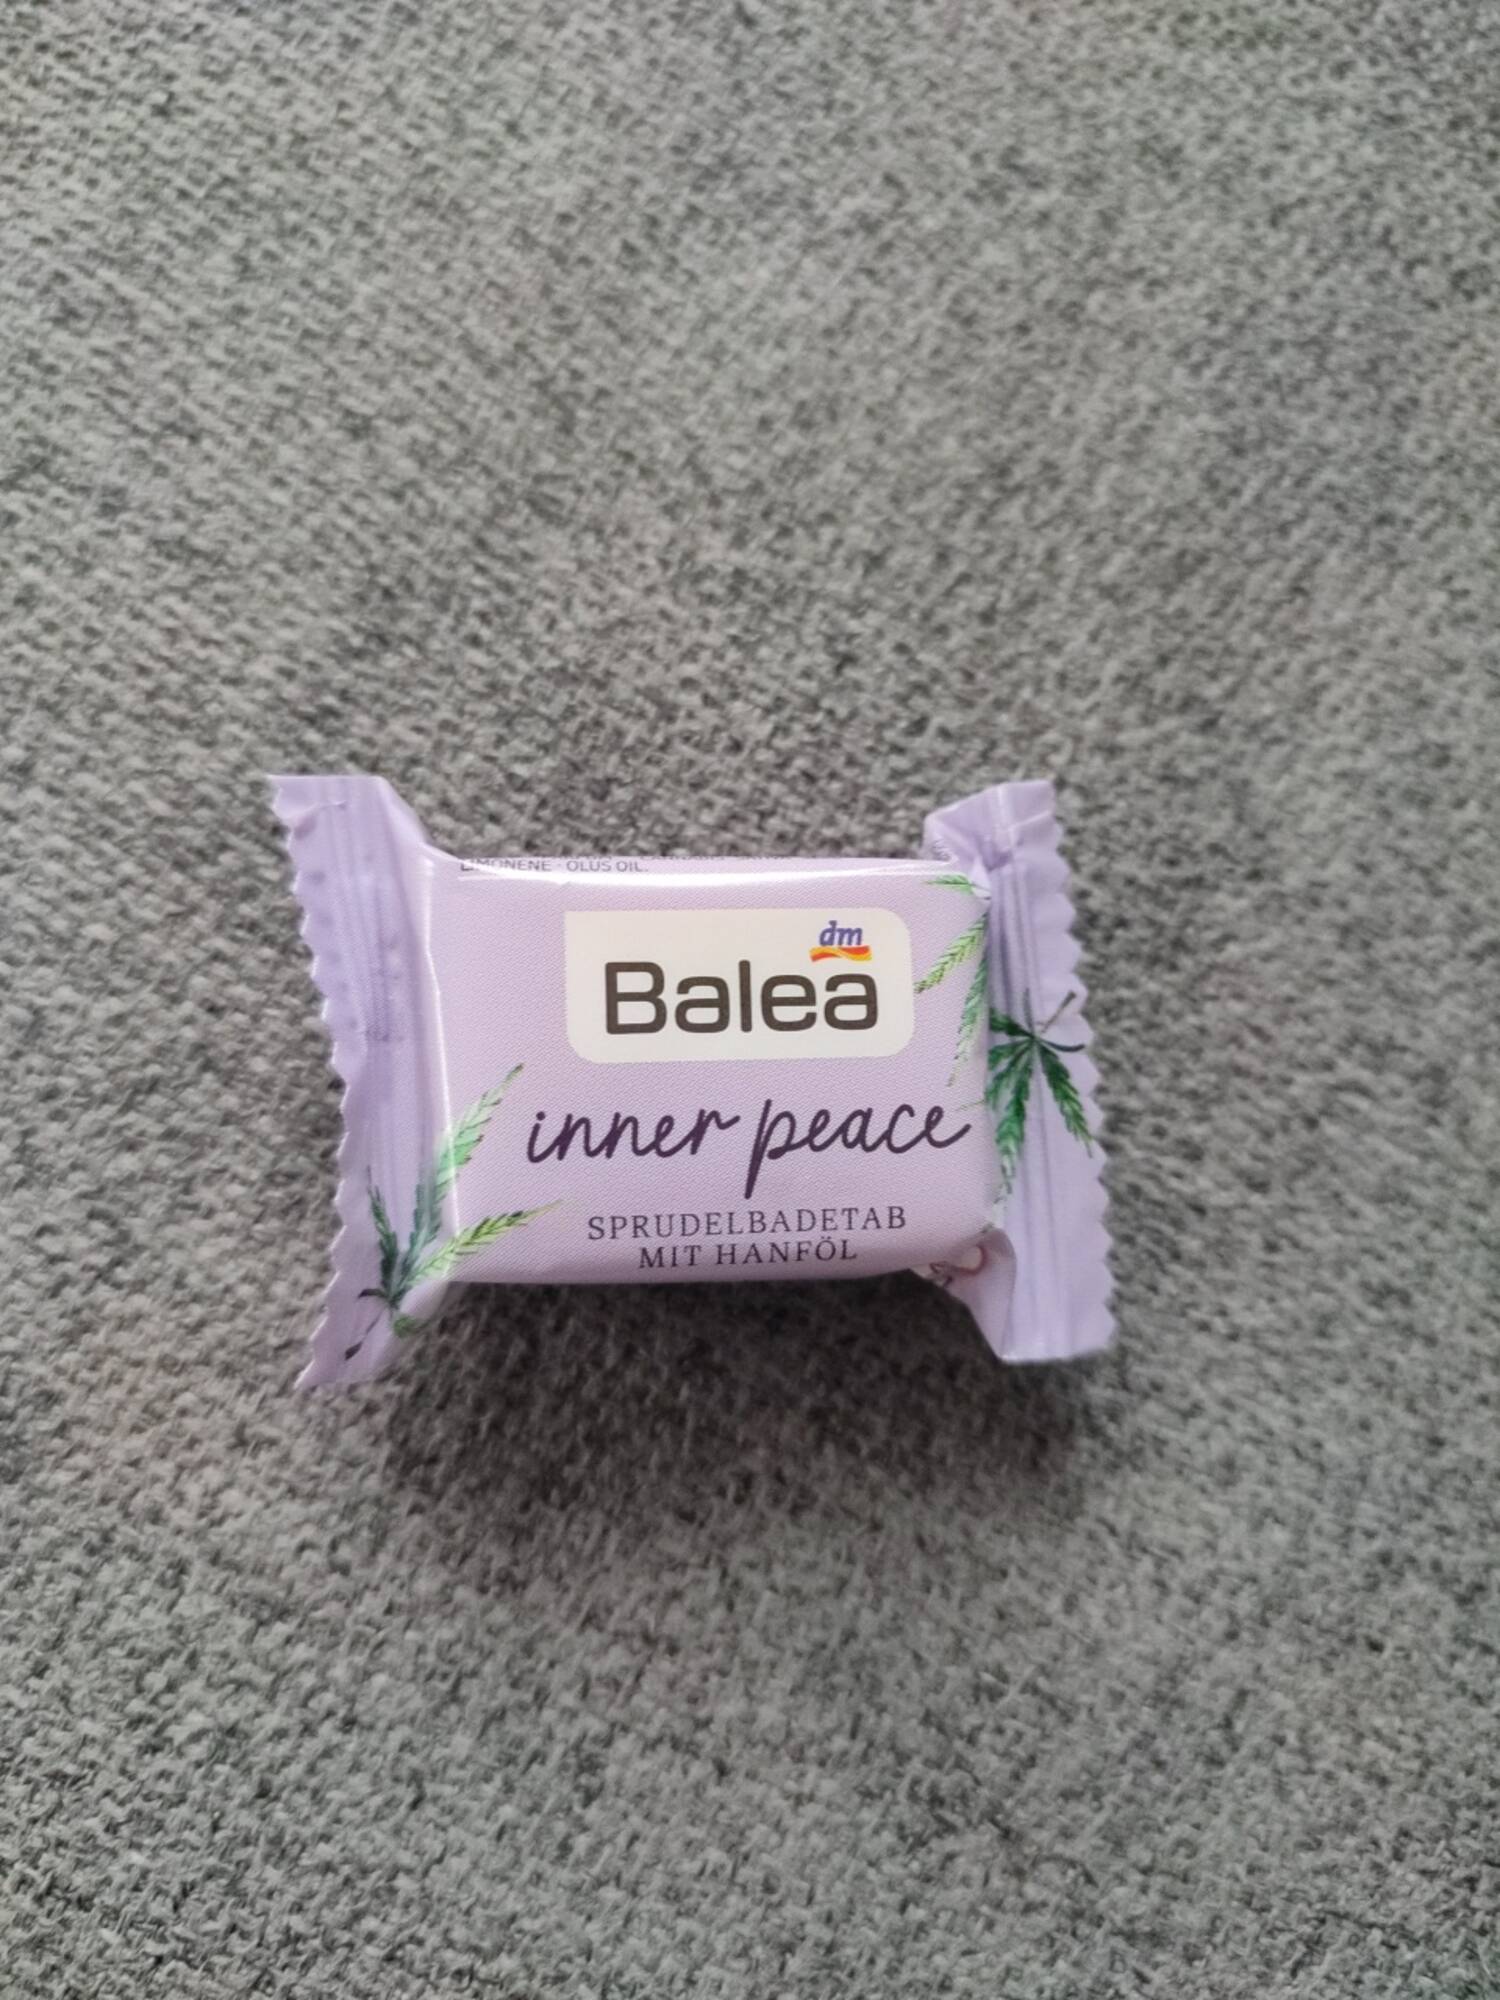 BALEA - Inner peace - Sprudel badetab mit hanföl